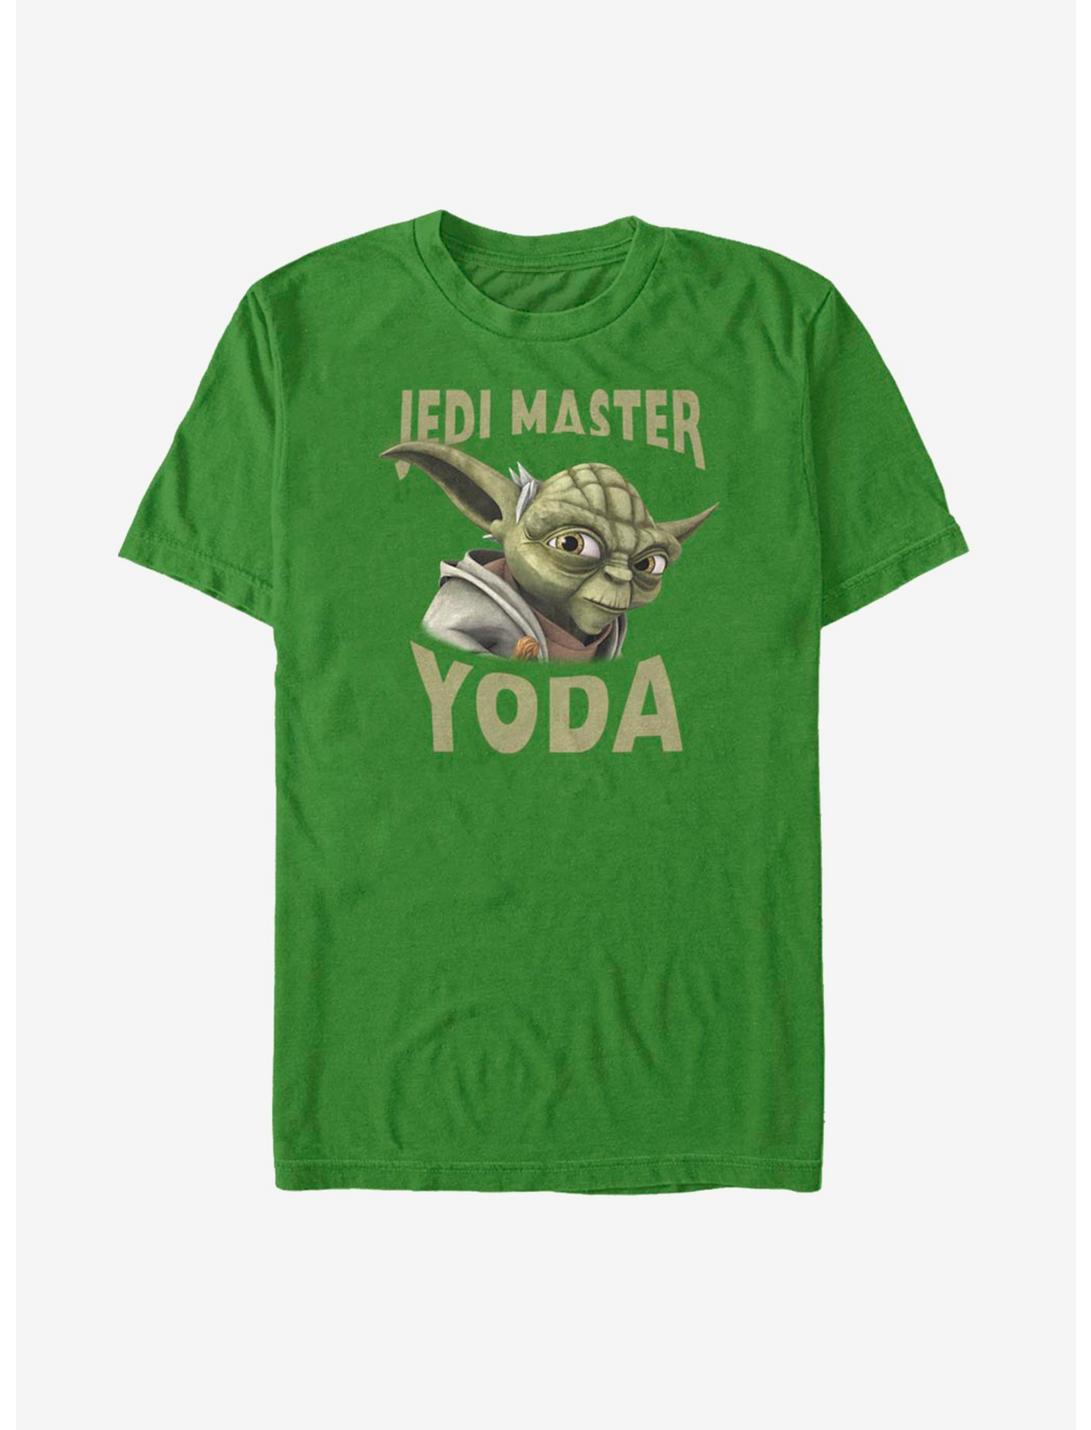 Star Wars: The Clone Wars Yoda Face T-Shirt, KELLY, hi-res